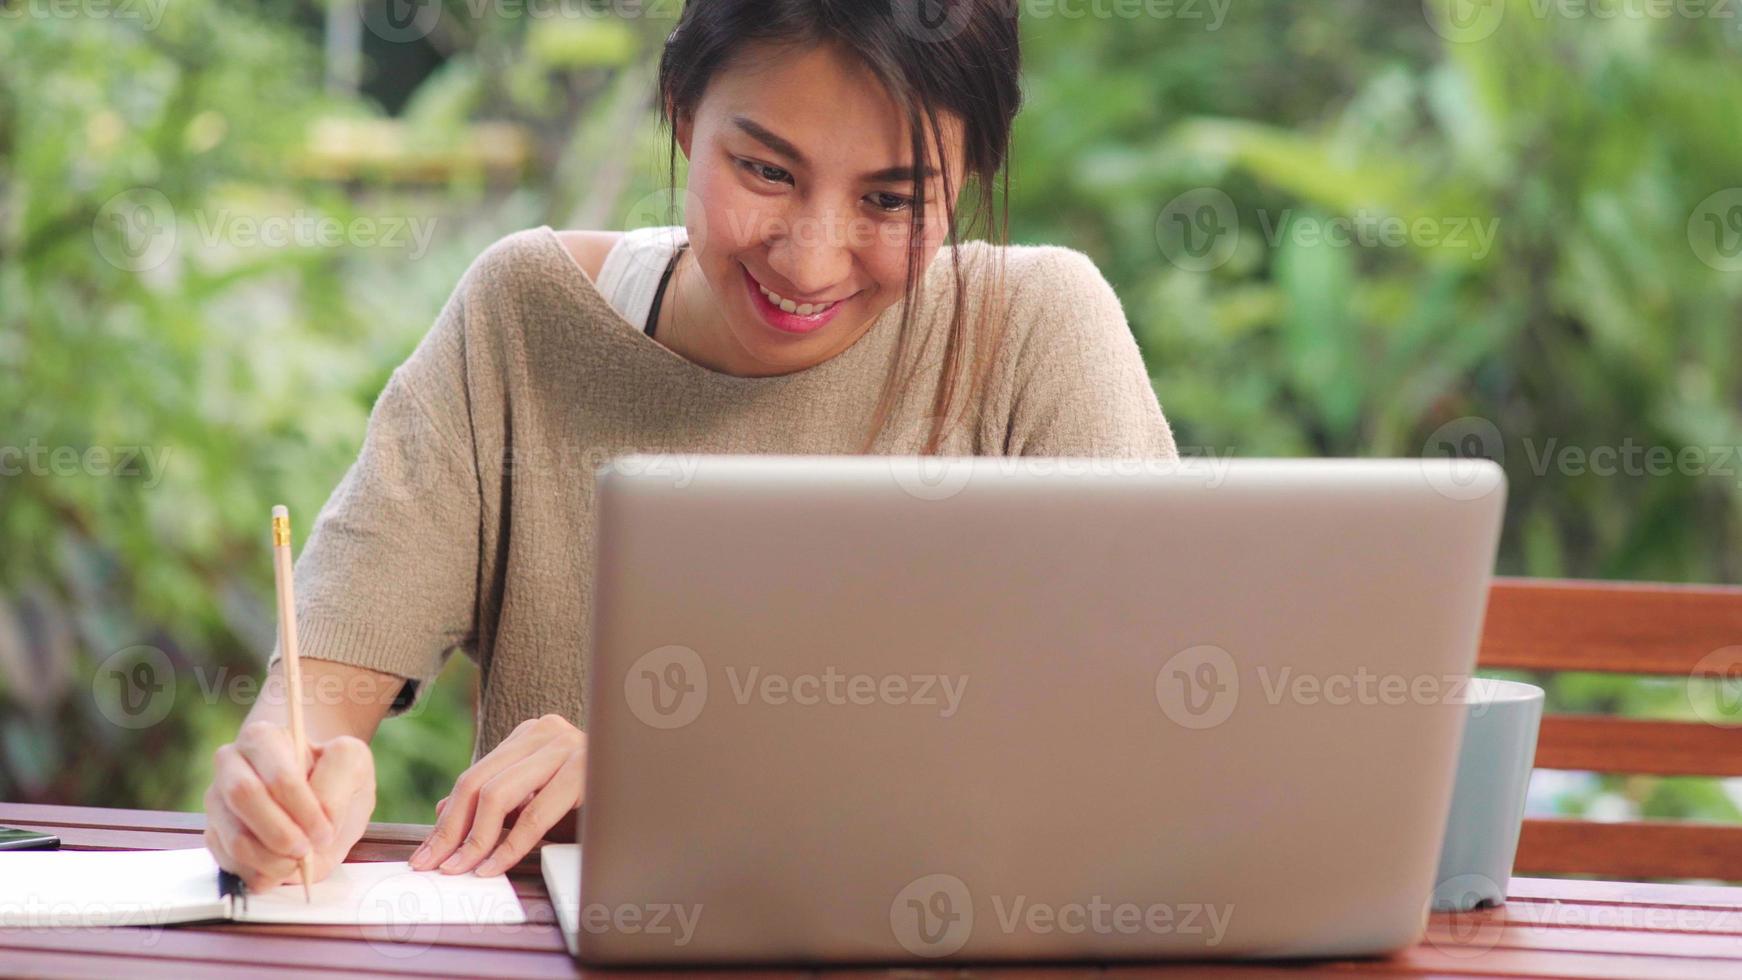 freelance aziatische vrouw die thuis werkt, zakelijke vrouw die 's ochtends op een laptop in de tuin zit. levensstijl vrouwen die thuis werken concept. foto